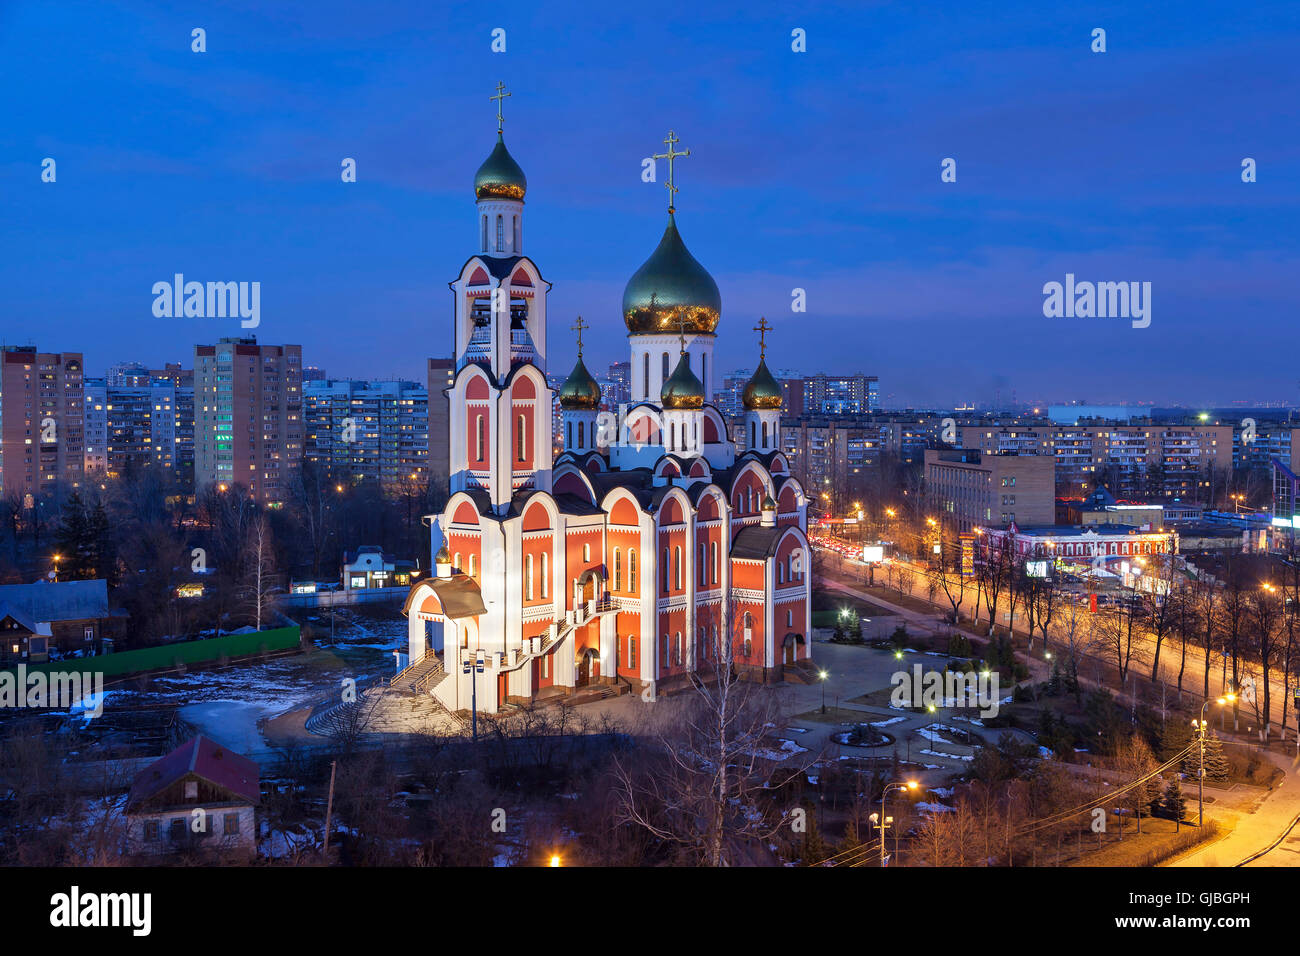 Eglise de Saint George le victorieux dans la soirée, Moscow, dans la région de Moscou, Russie Banque D'Images